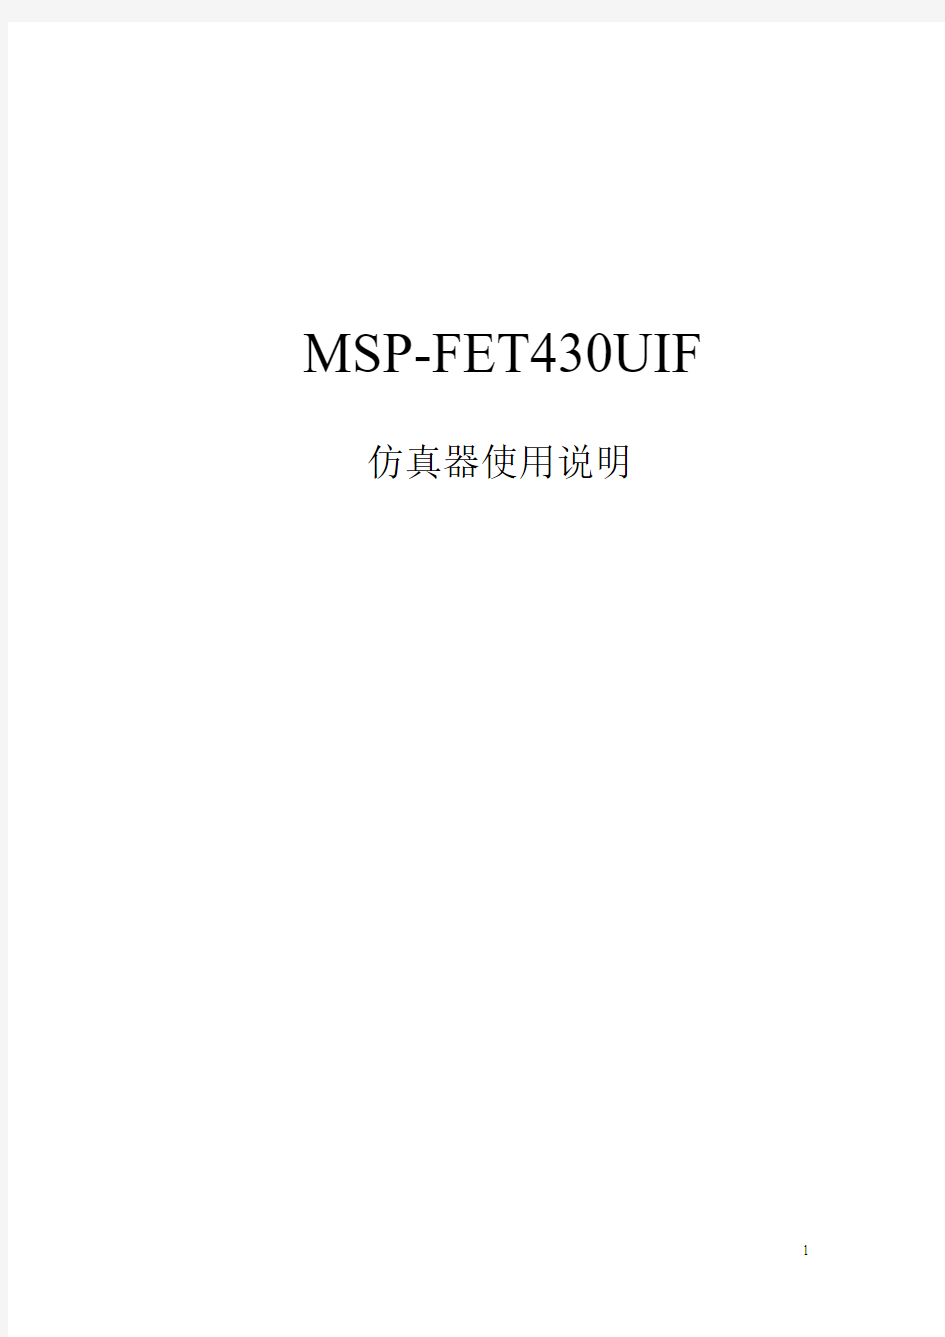 MSP-FET430UIF仿真器使用说明